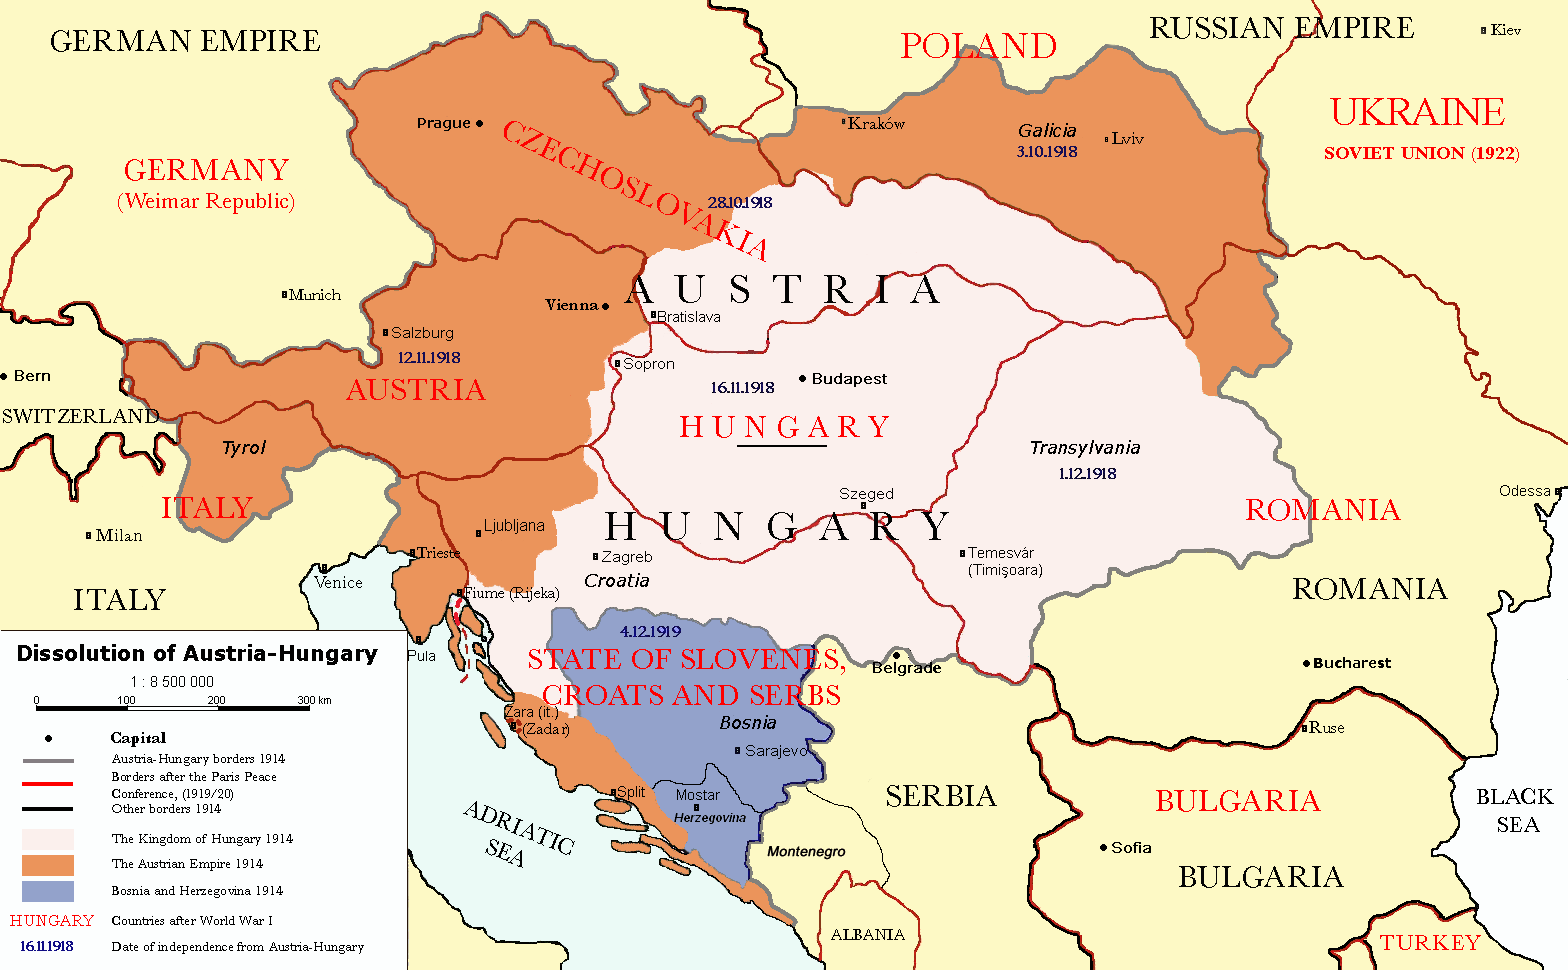 Map of Austria Hungary dissolutio